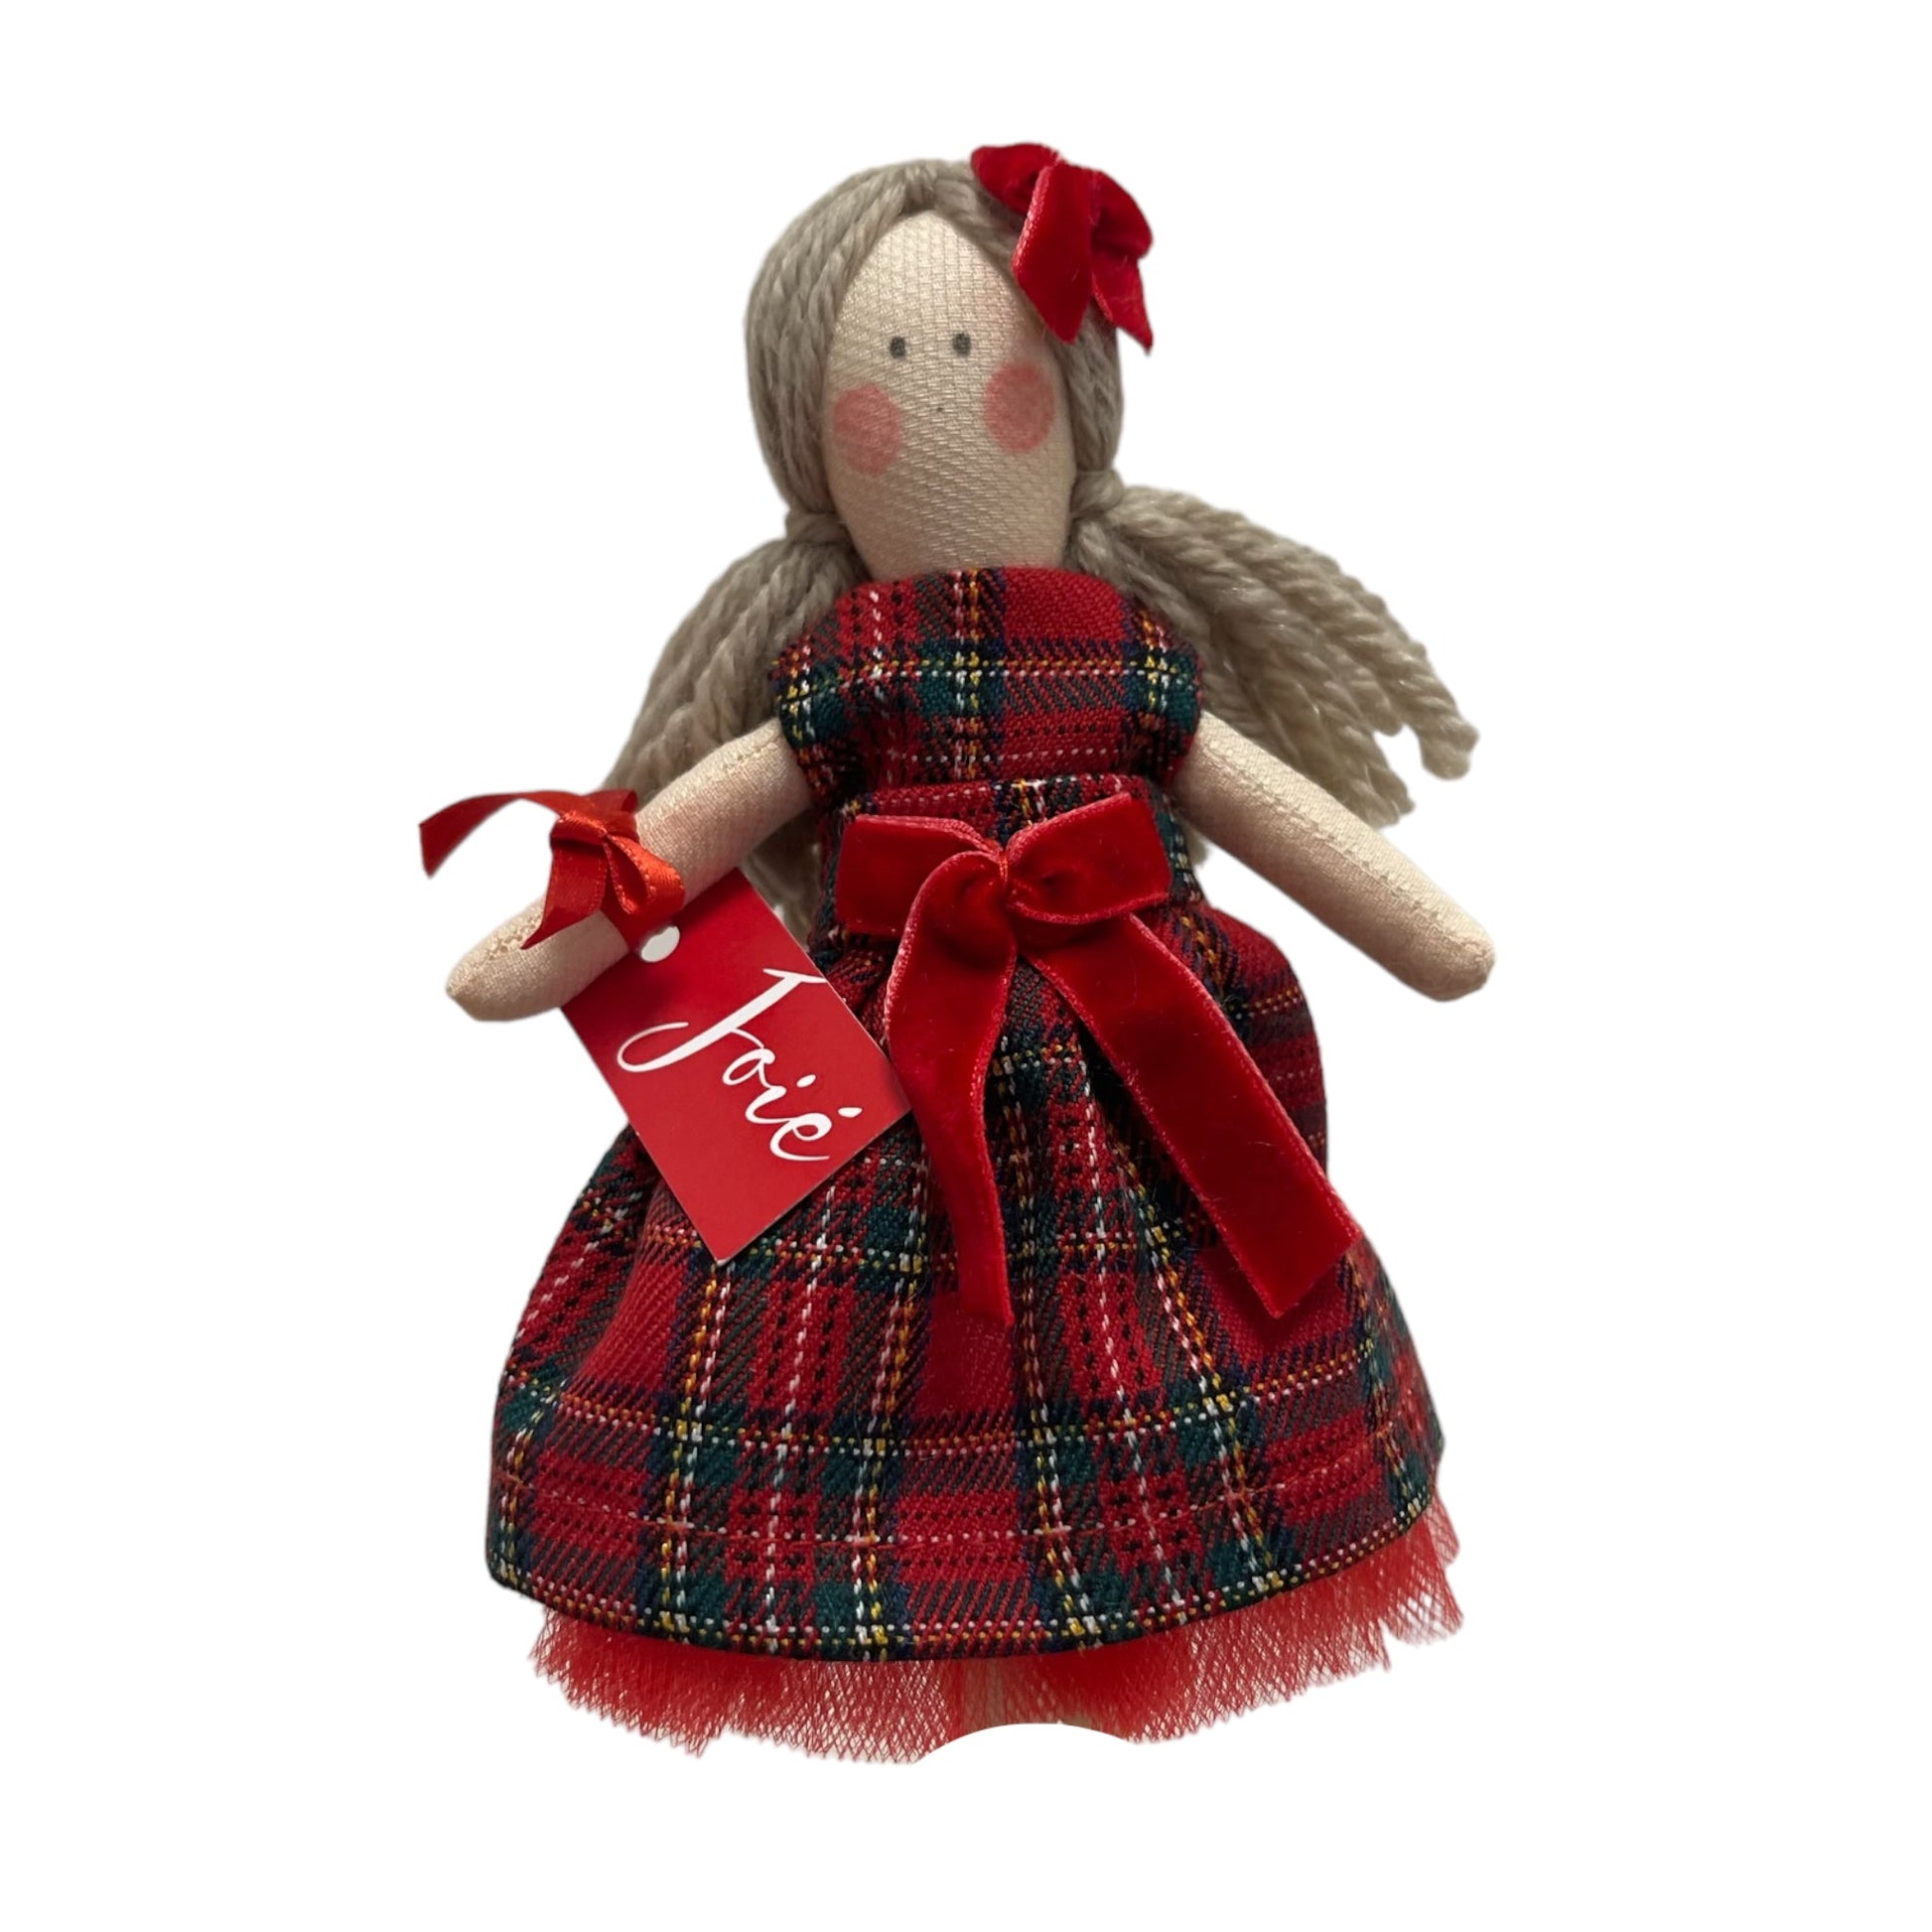 Bambola “Cloe” in cotone tartan - Bomboniere e idee regalo